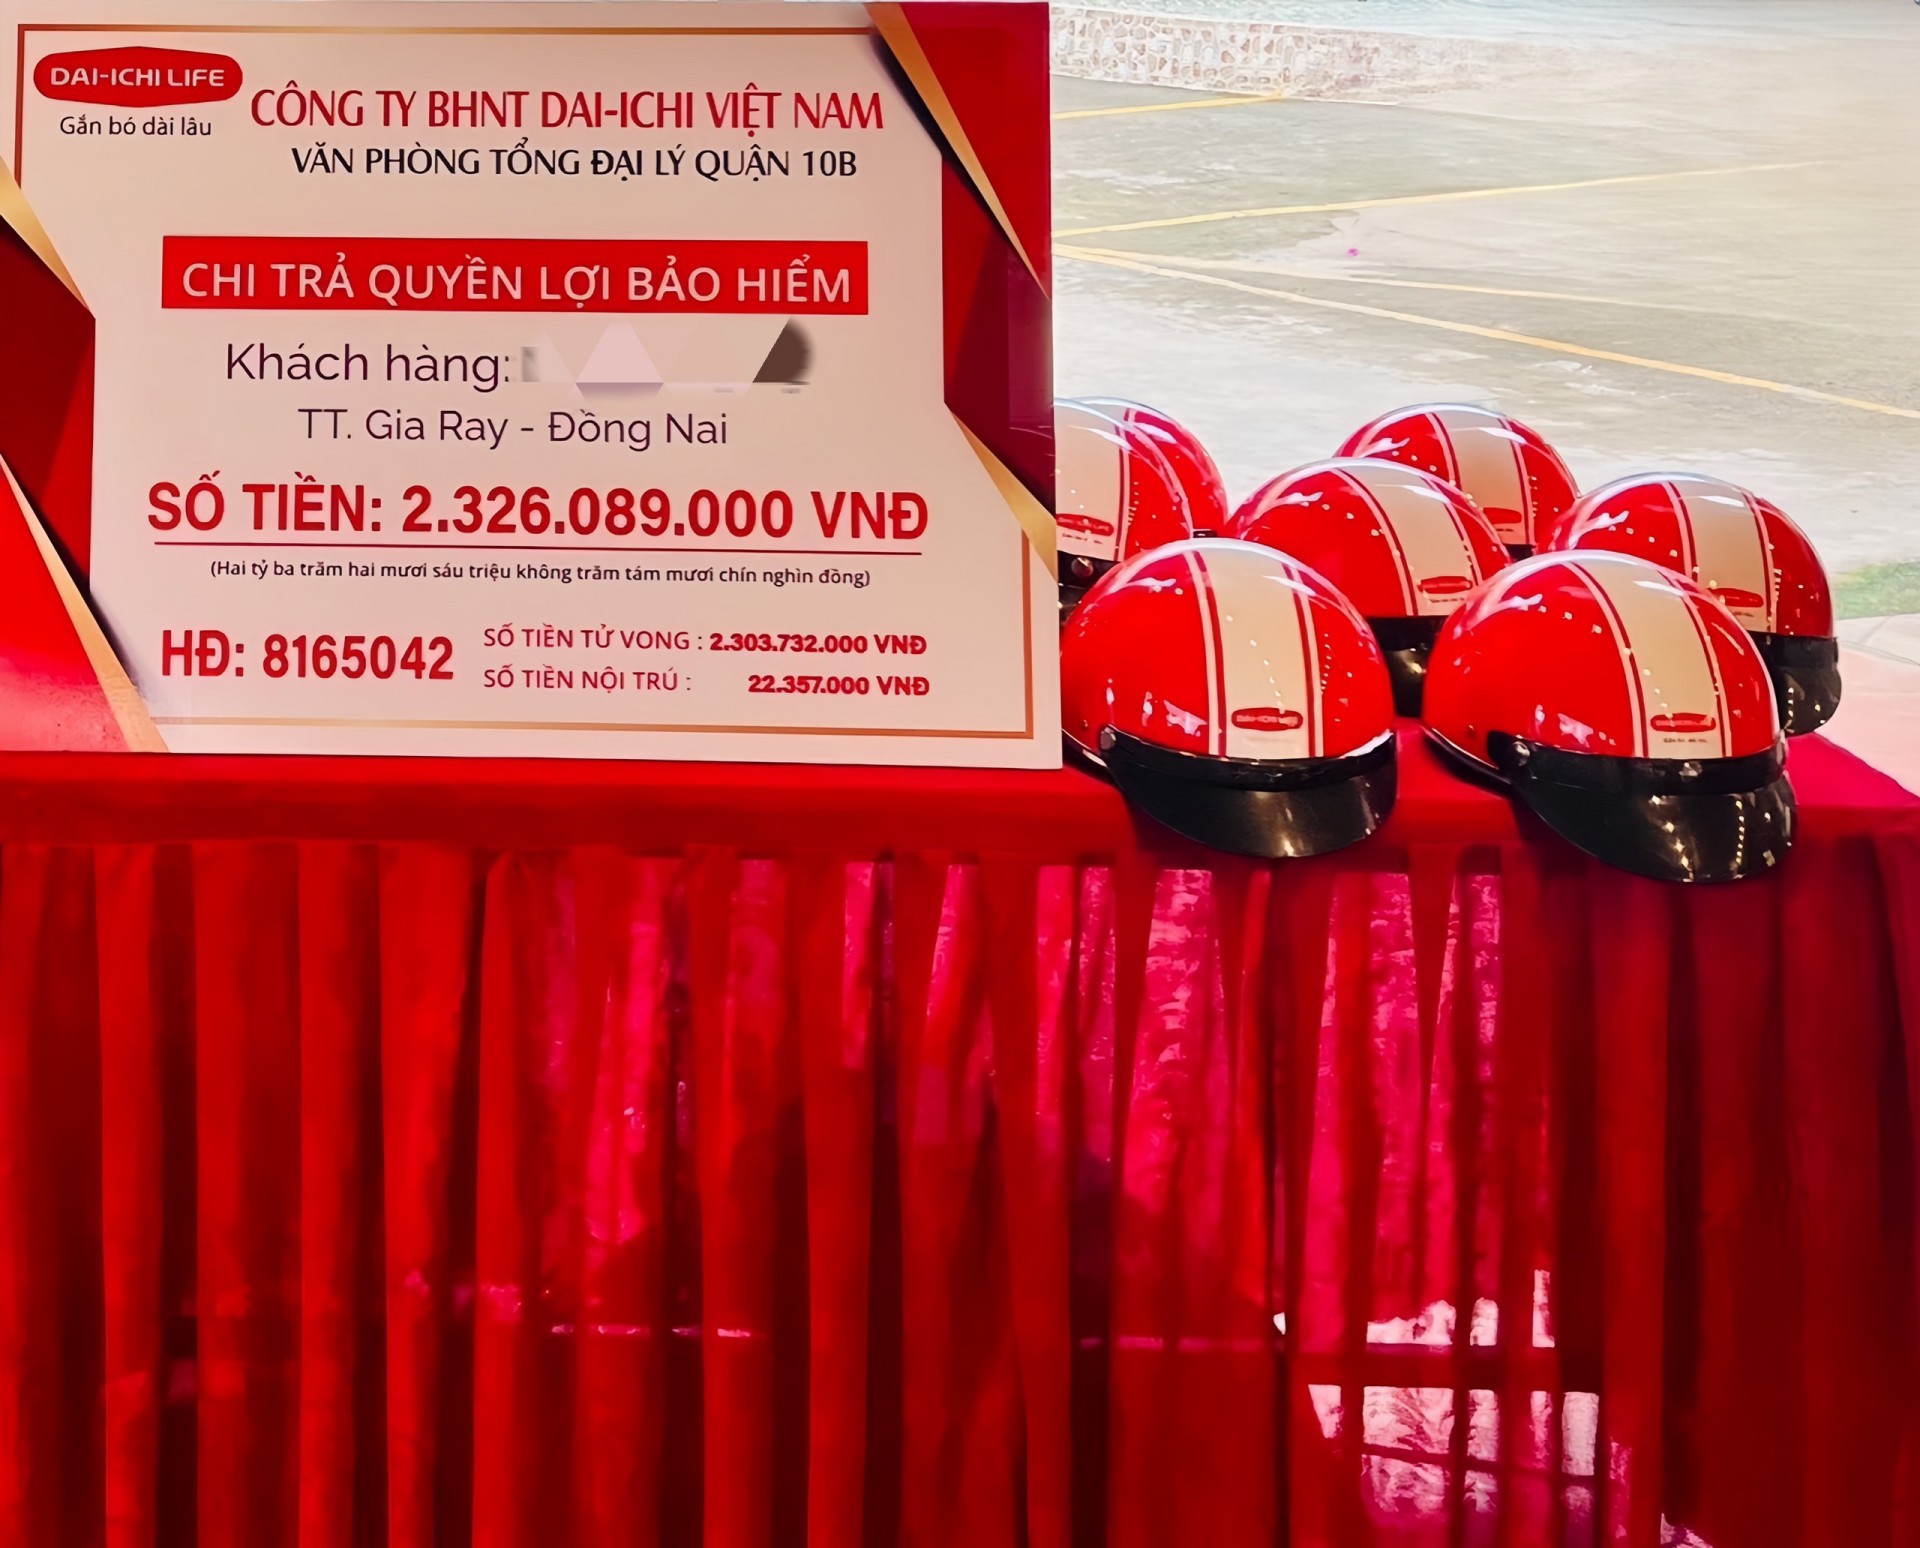 Bảo hiểm nhân thọ DAI-ICHI Việt Nam chi trả hơn 2,3 tỷ đồng quyền lợi tử vong cho khách hàng